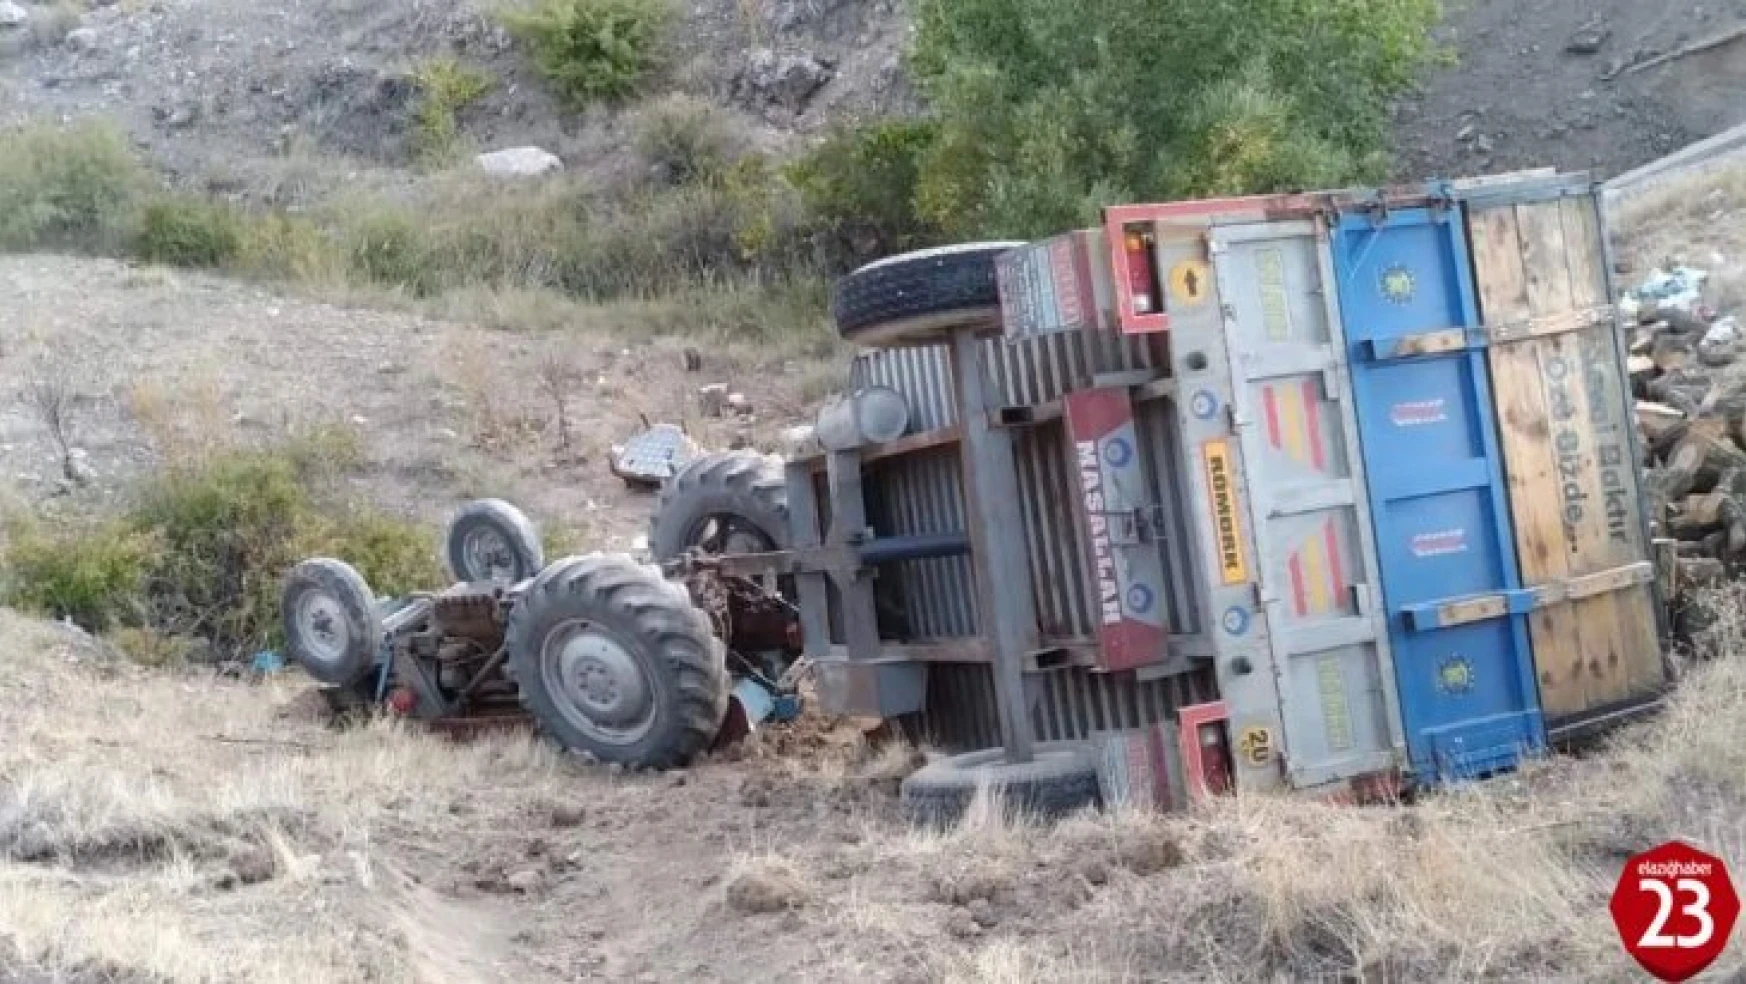 Baskil'de Traktör Uçuruma Yuvarlandı, Sürücü Atlayarak Kurtuldu